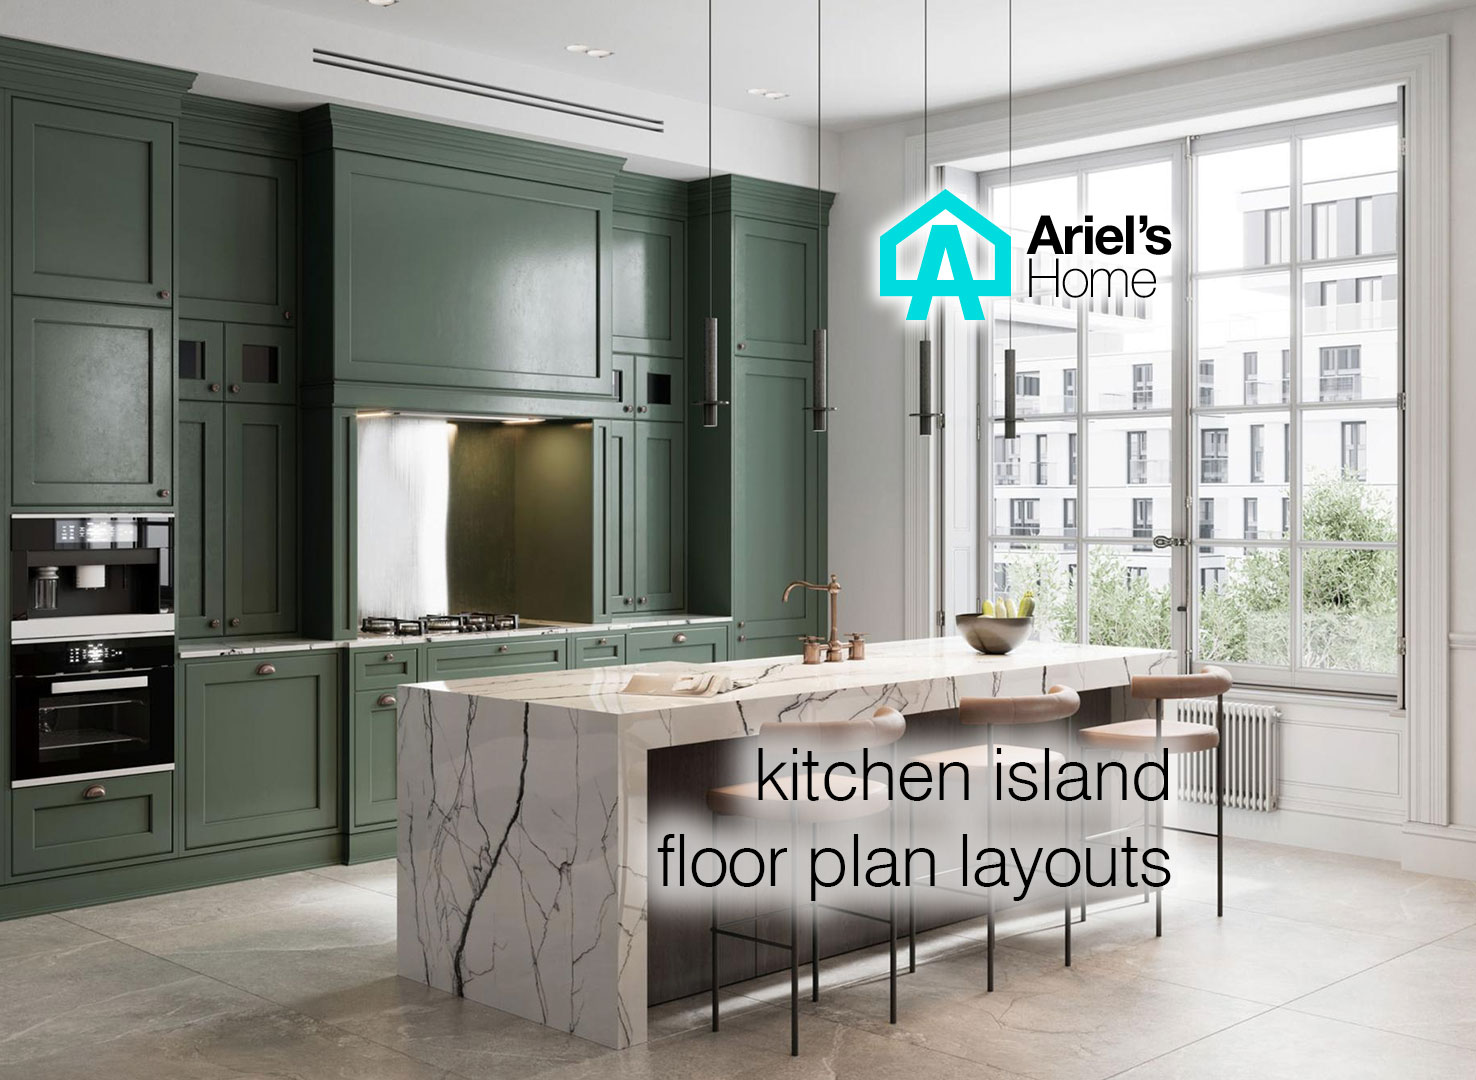 Kitchen island floor plan layouts [2022] - Ariel's Home